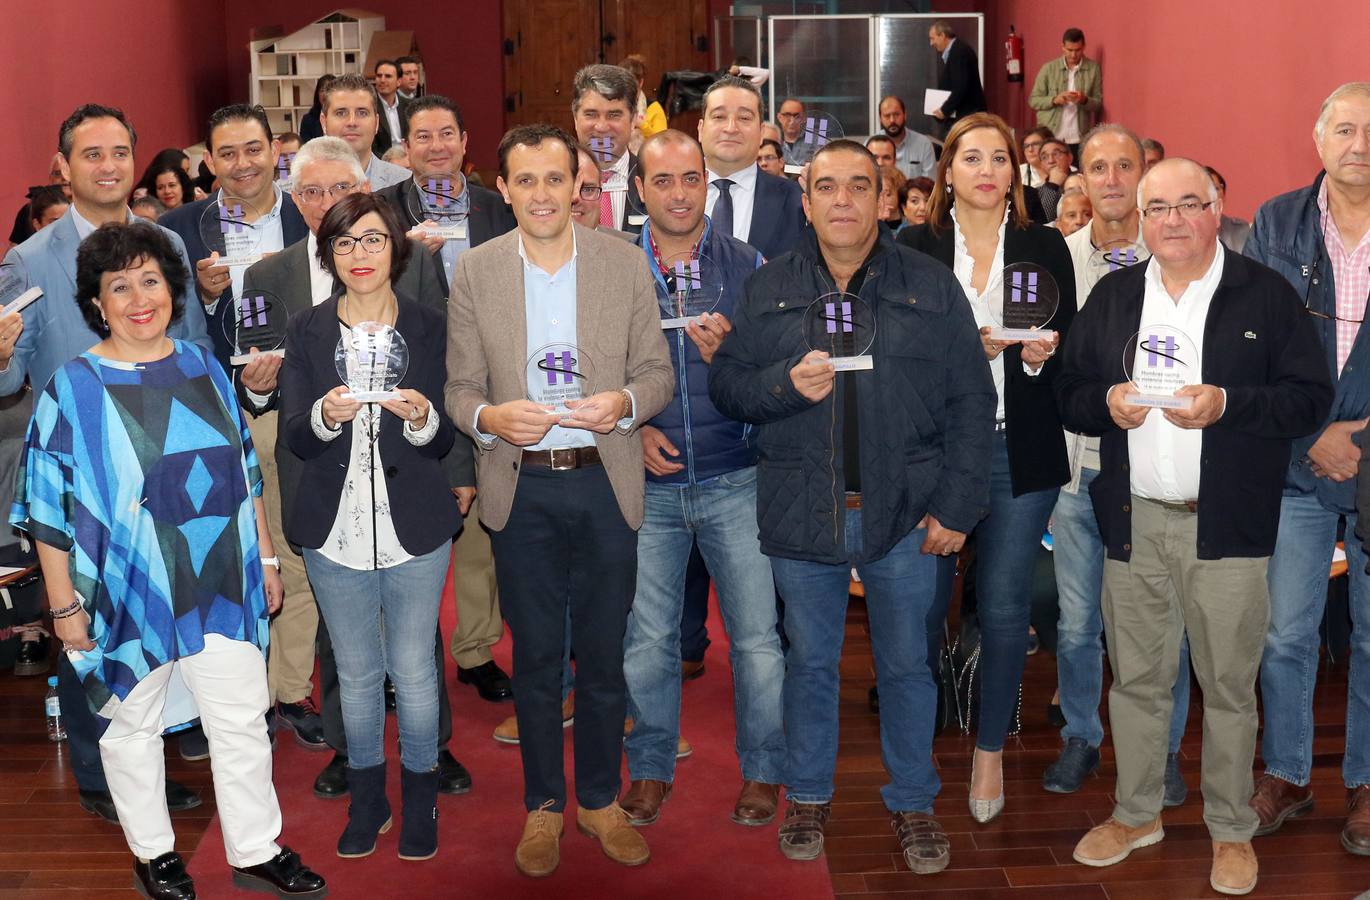 Acto institucional de la Red de Municipios de Valladolid Hombres por la Igualdad. Los 16 nuevos municipios de la red reciben sus distintivos. 